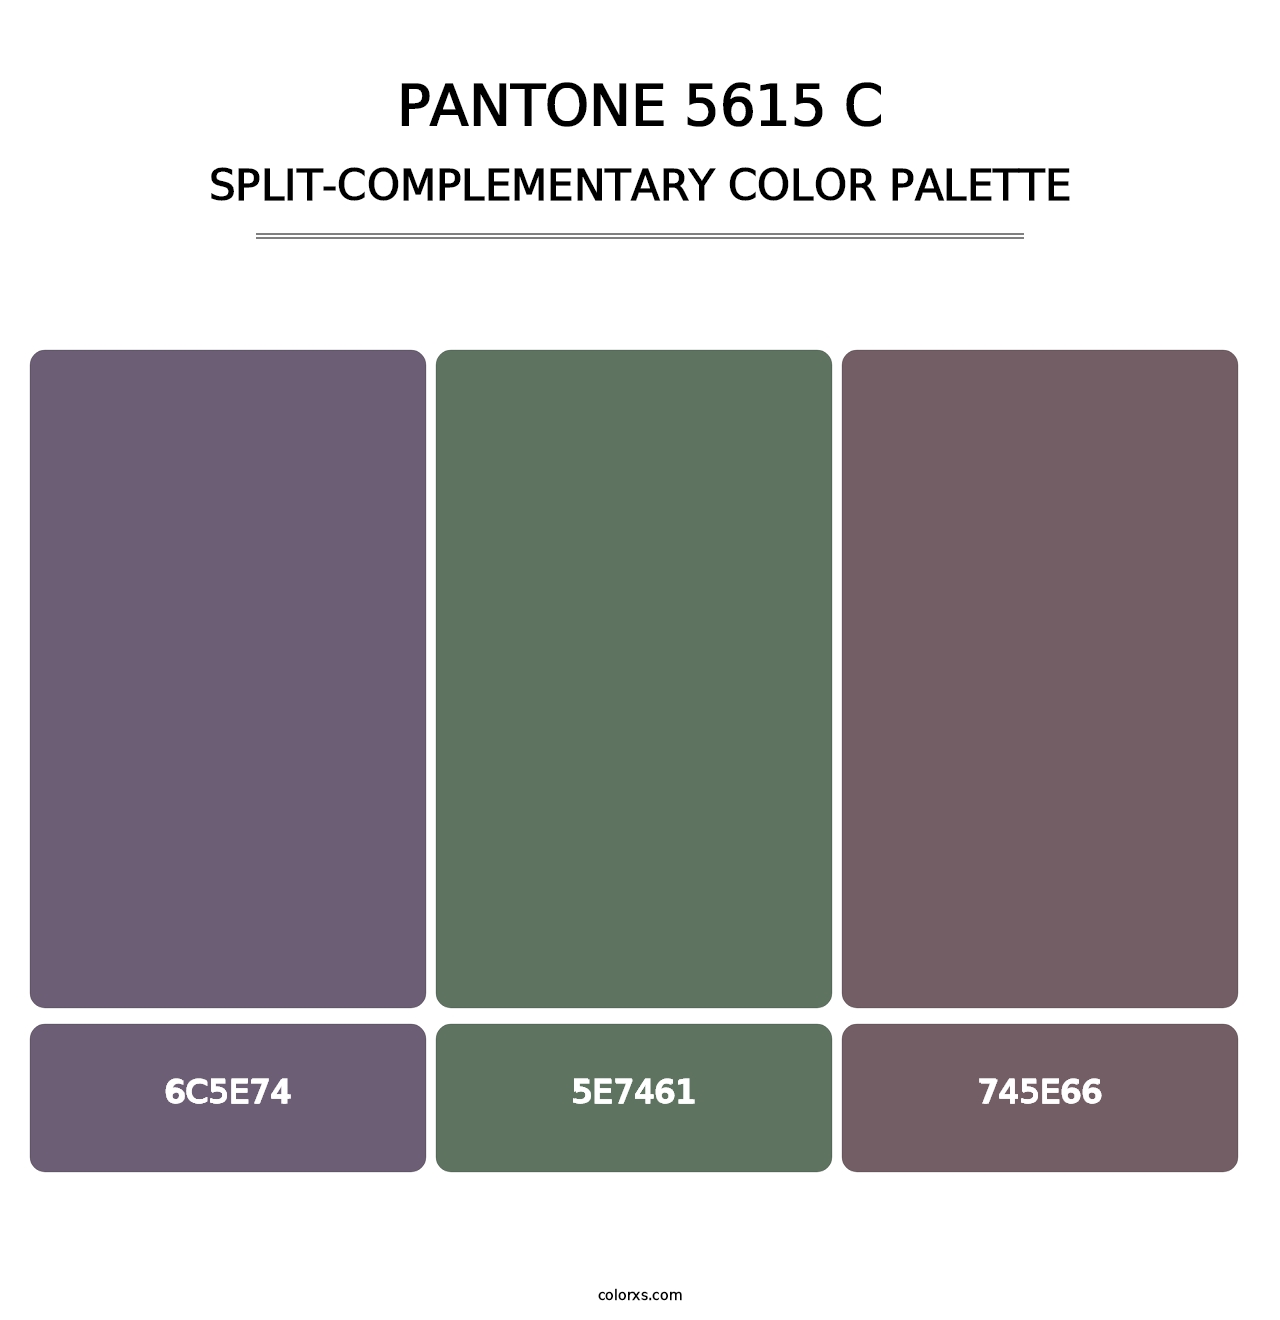 PANTONE 5615 C - Split-Complementary Color Palette